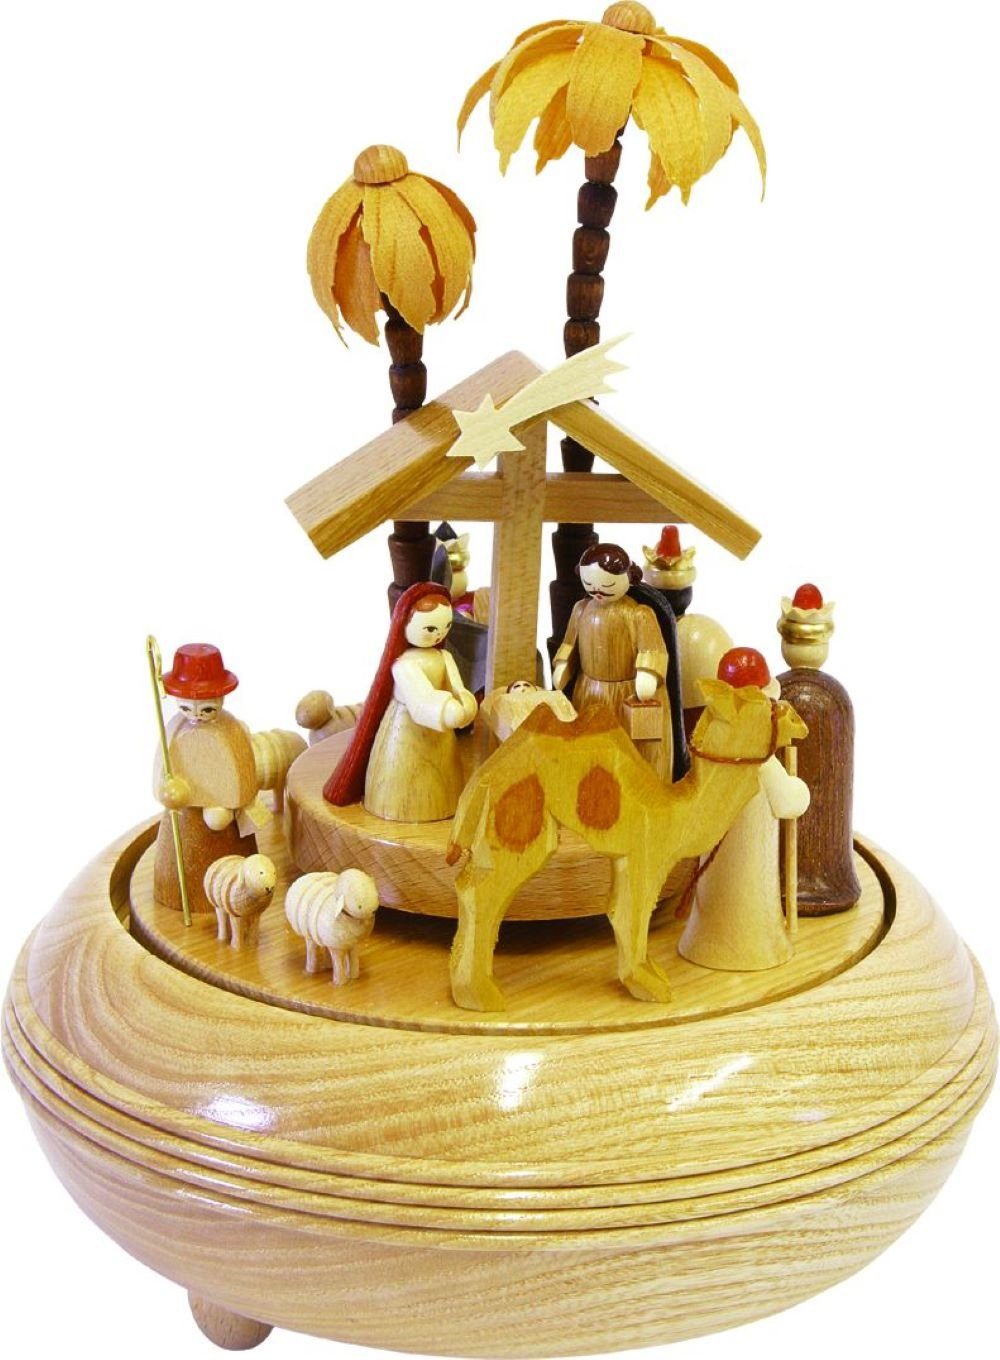 Holzkunst Glaesser Christi aus Spieldose Spieluhr dem Erzgebirge Geburt, Richard